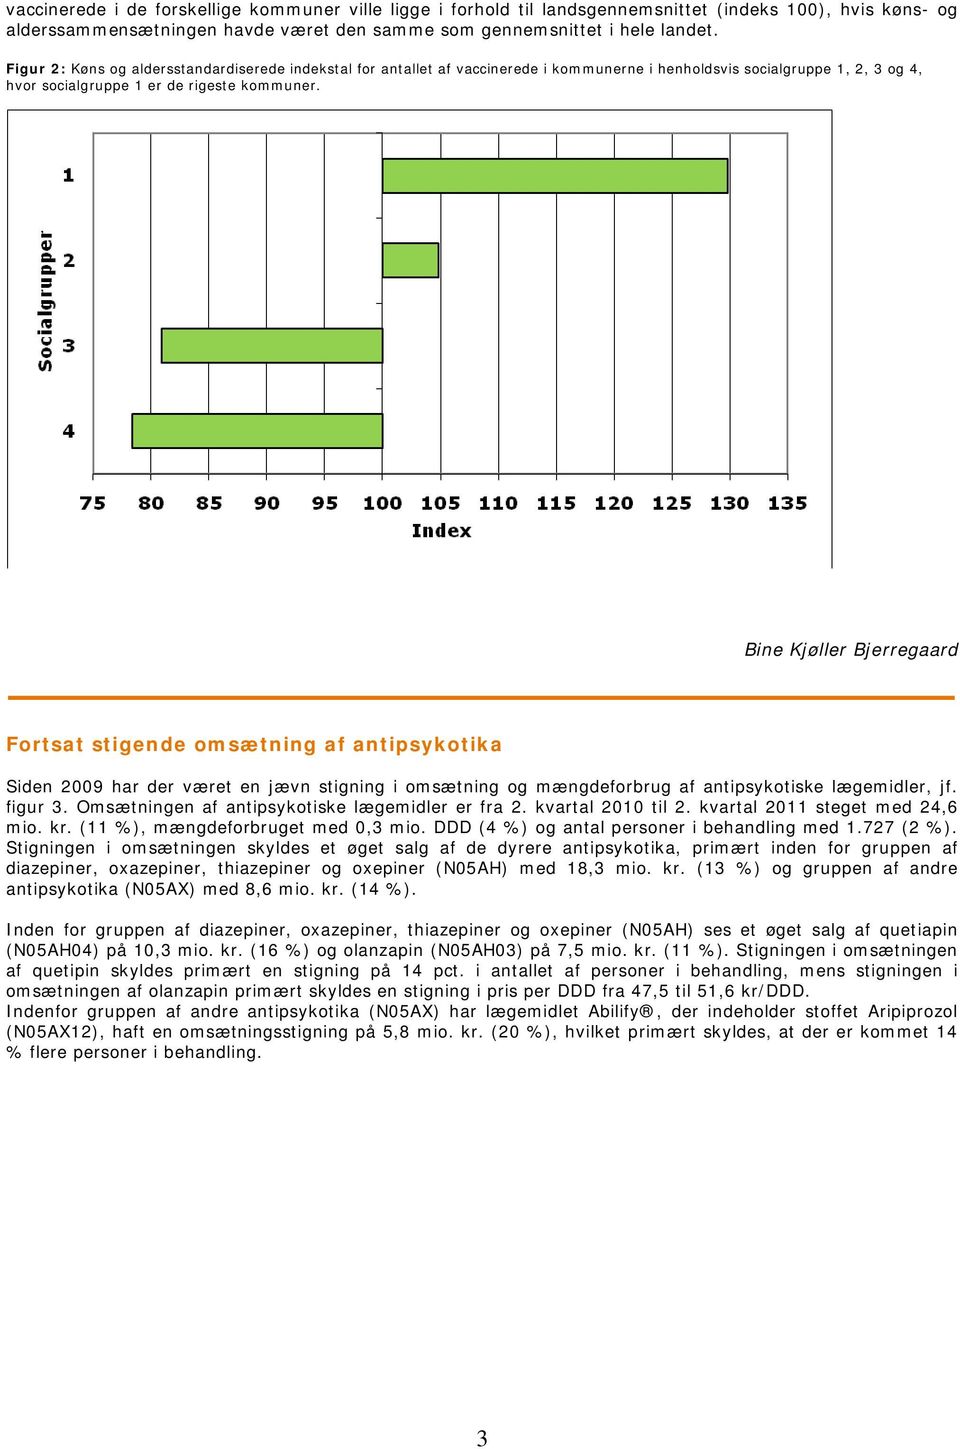 Bine Kjøller Bjerregaard Fortsat stigende omsætning af antipsykotika Siden 2009 har der været en jævn stigning i omsætning og mængdeforbrug af antipsykotiske lægemidler, jf. figur 3.